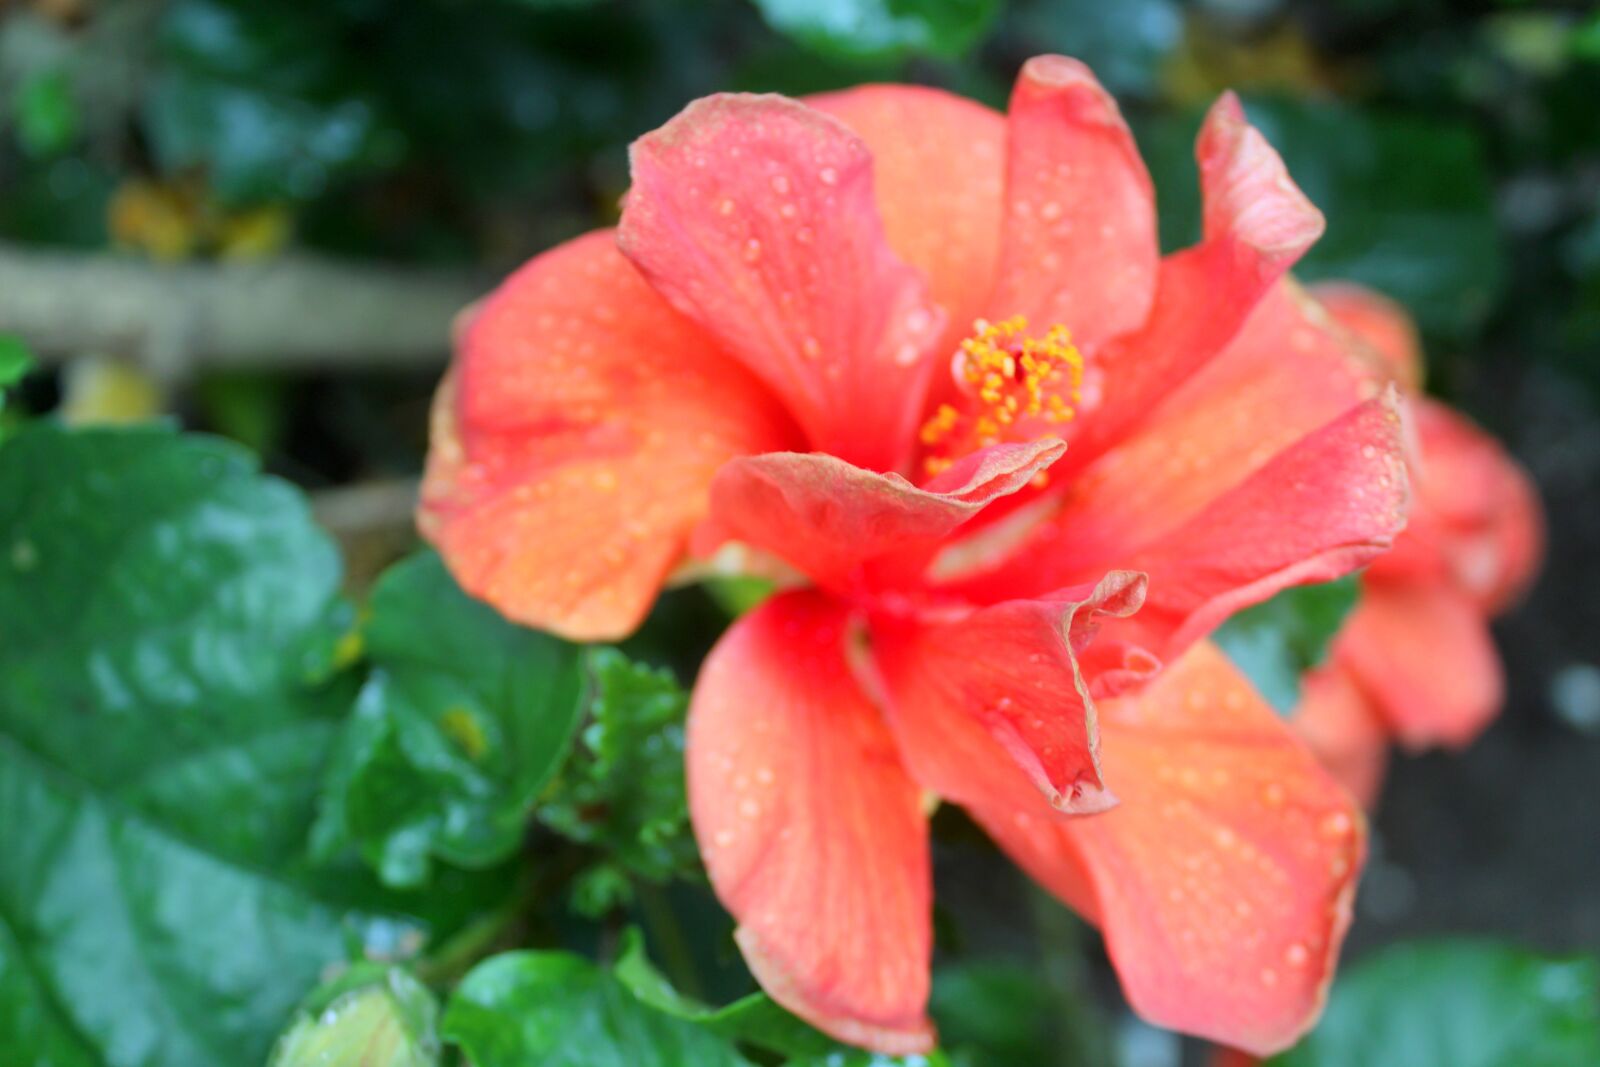 Canon EOS 1200D (EOS Rebel T5 / EOS Kiss X70 / EOS Hi) sample photo. Flower, nature, garden photography